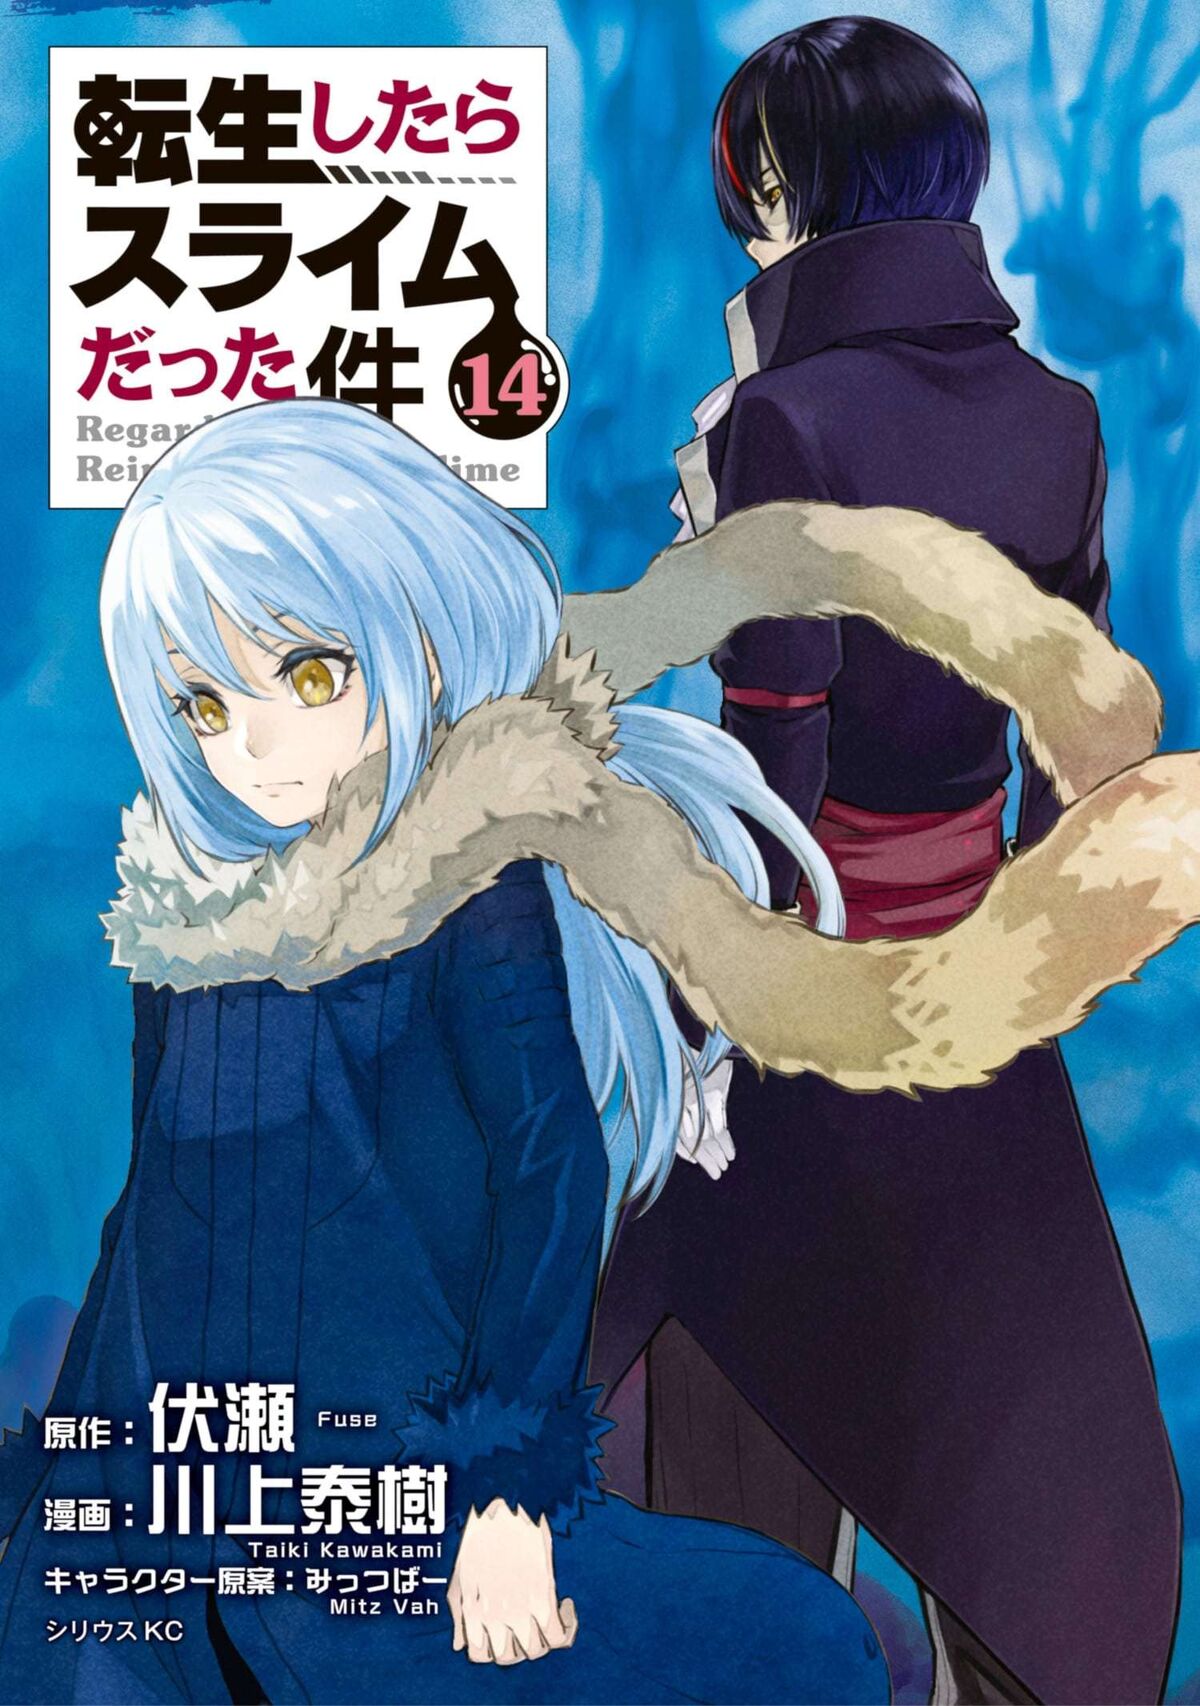 Manga Volume 1, Tensei Shitara Slime Datta Ken Wiki